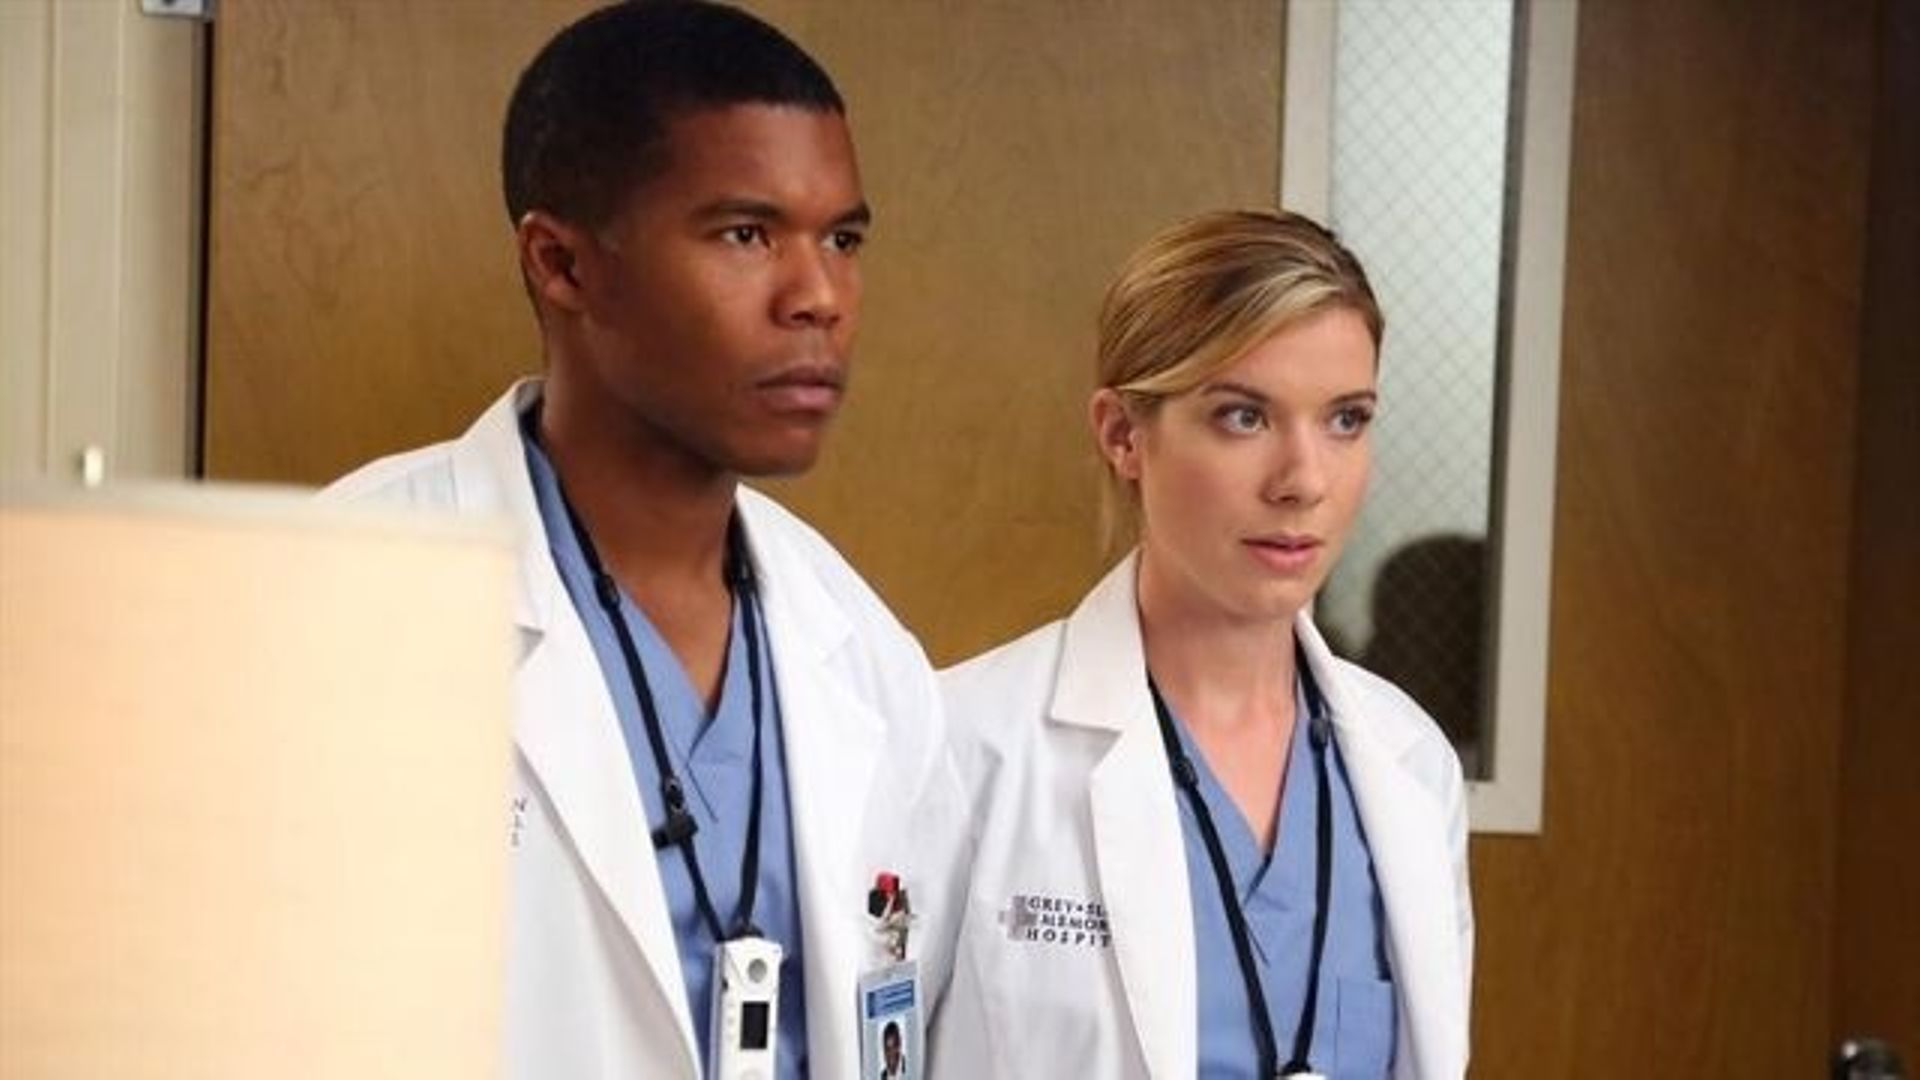 Les médecins Shane Ross (Gaius Charles, à gauche) et Leah Murphy (Tessa Ferrer) quitteront "Grey's Anatomy" en mai prochain, à la fin de la dixième saison